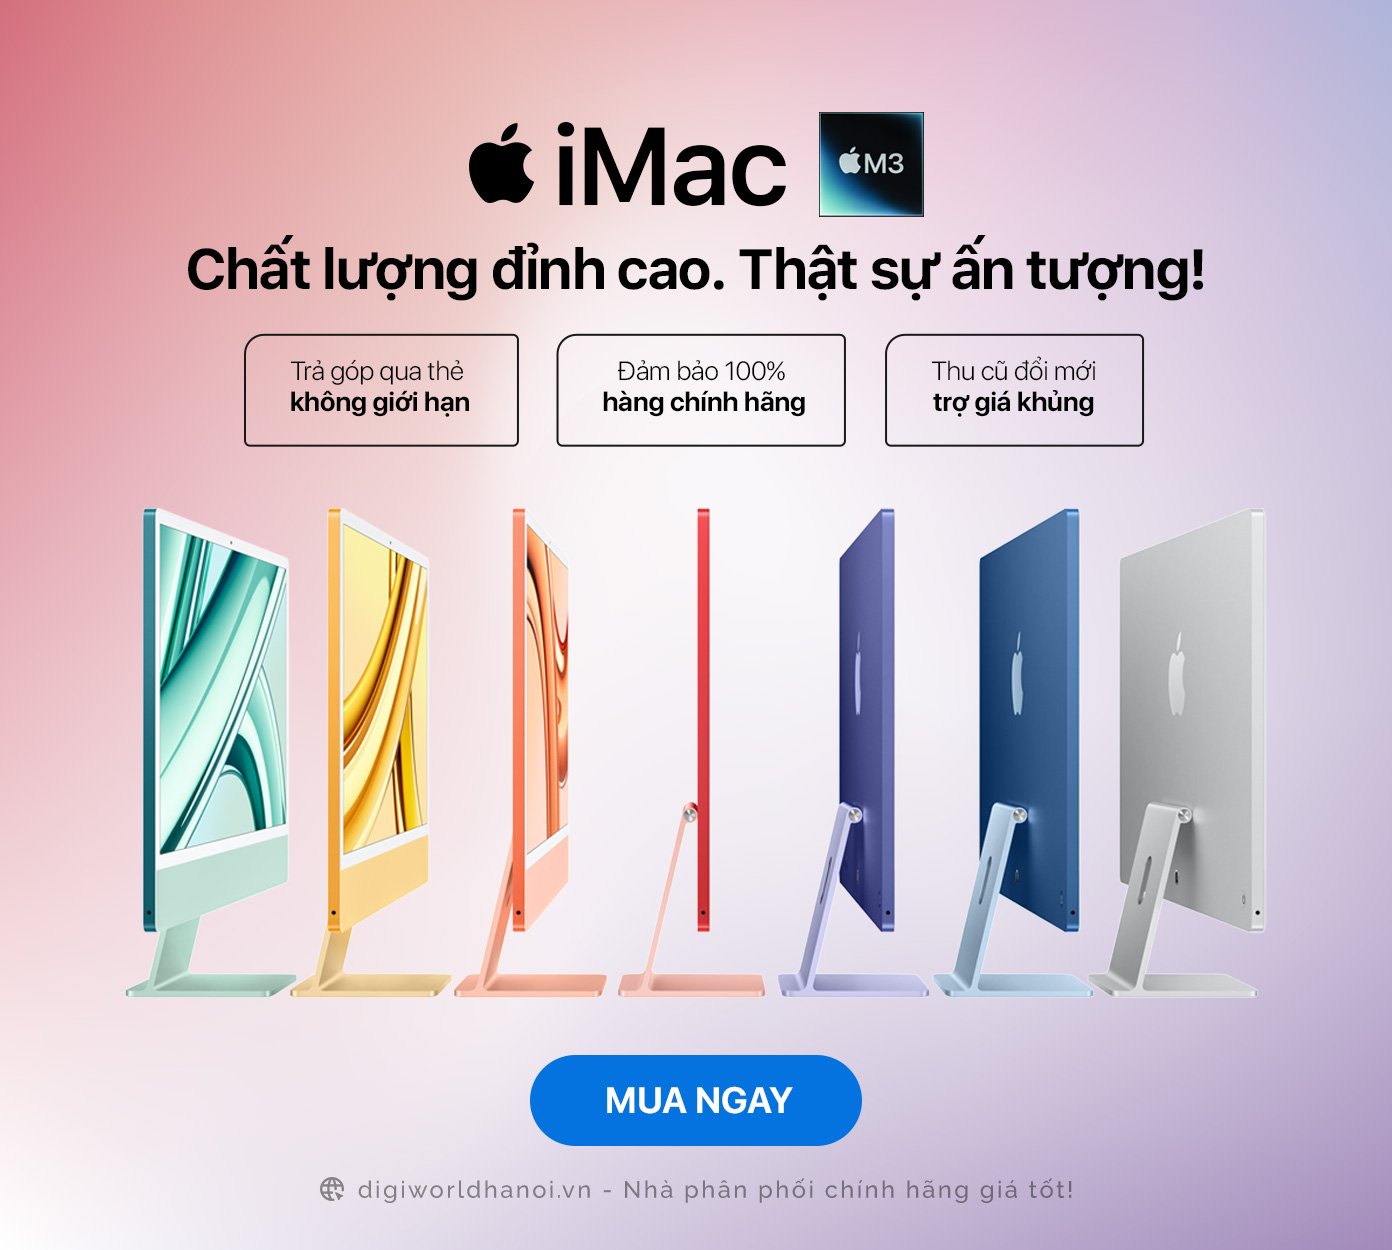 Máy tính Apple iMac M3 đang có giá rất tốt tại Digiworld Hà Nội